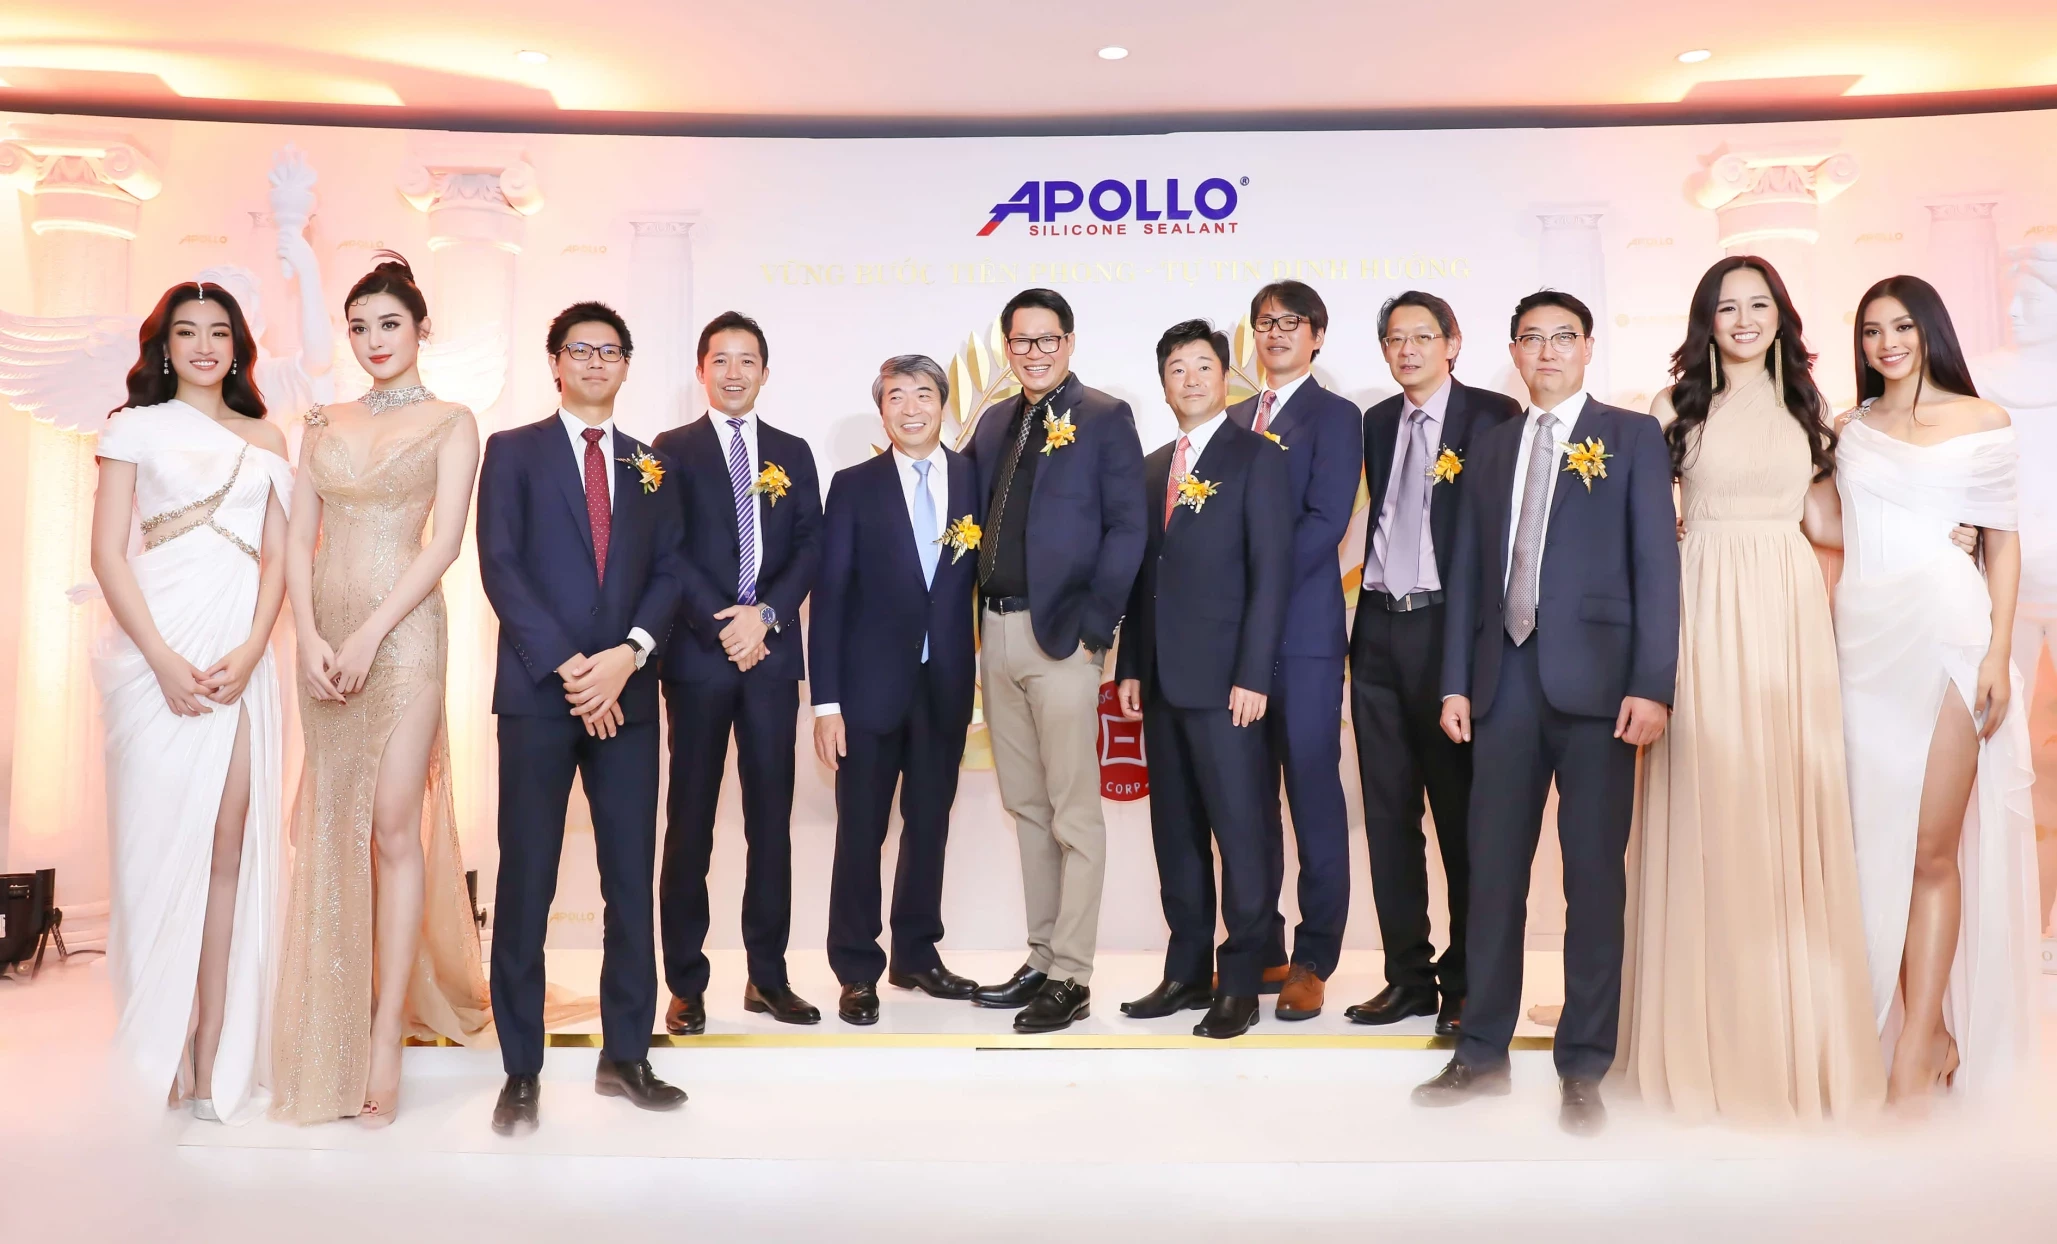 Đại tiệc Apollo 2019 Hội nghị Khách Hàng Và Đối Tác gắn kết để thành công.